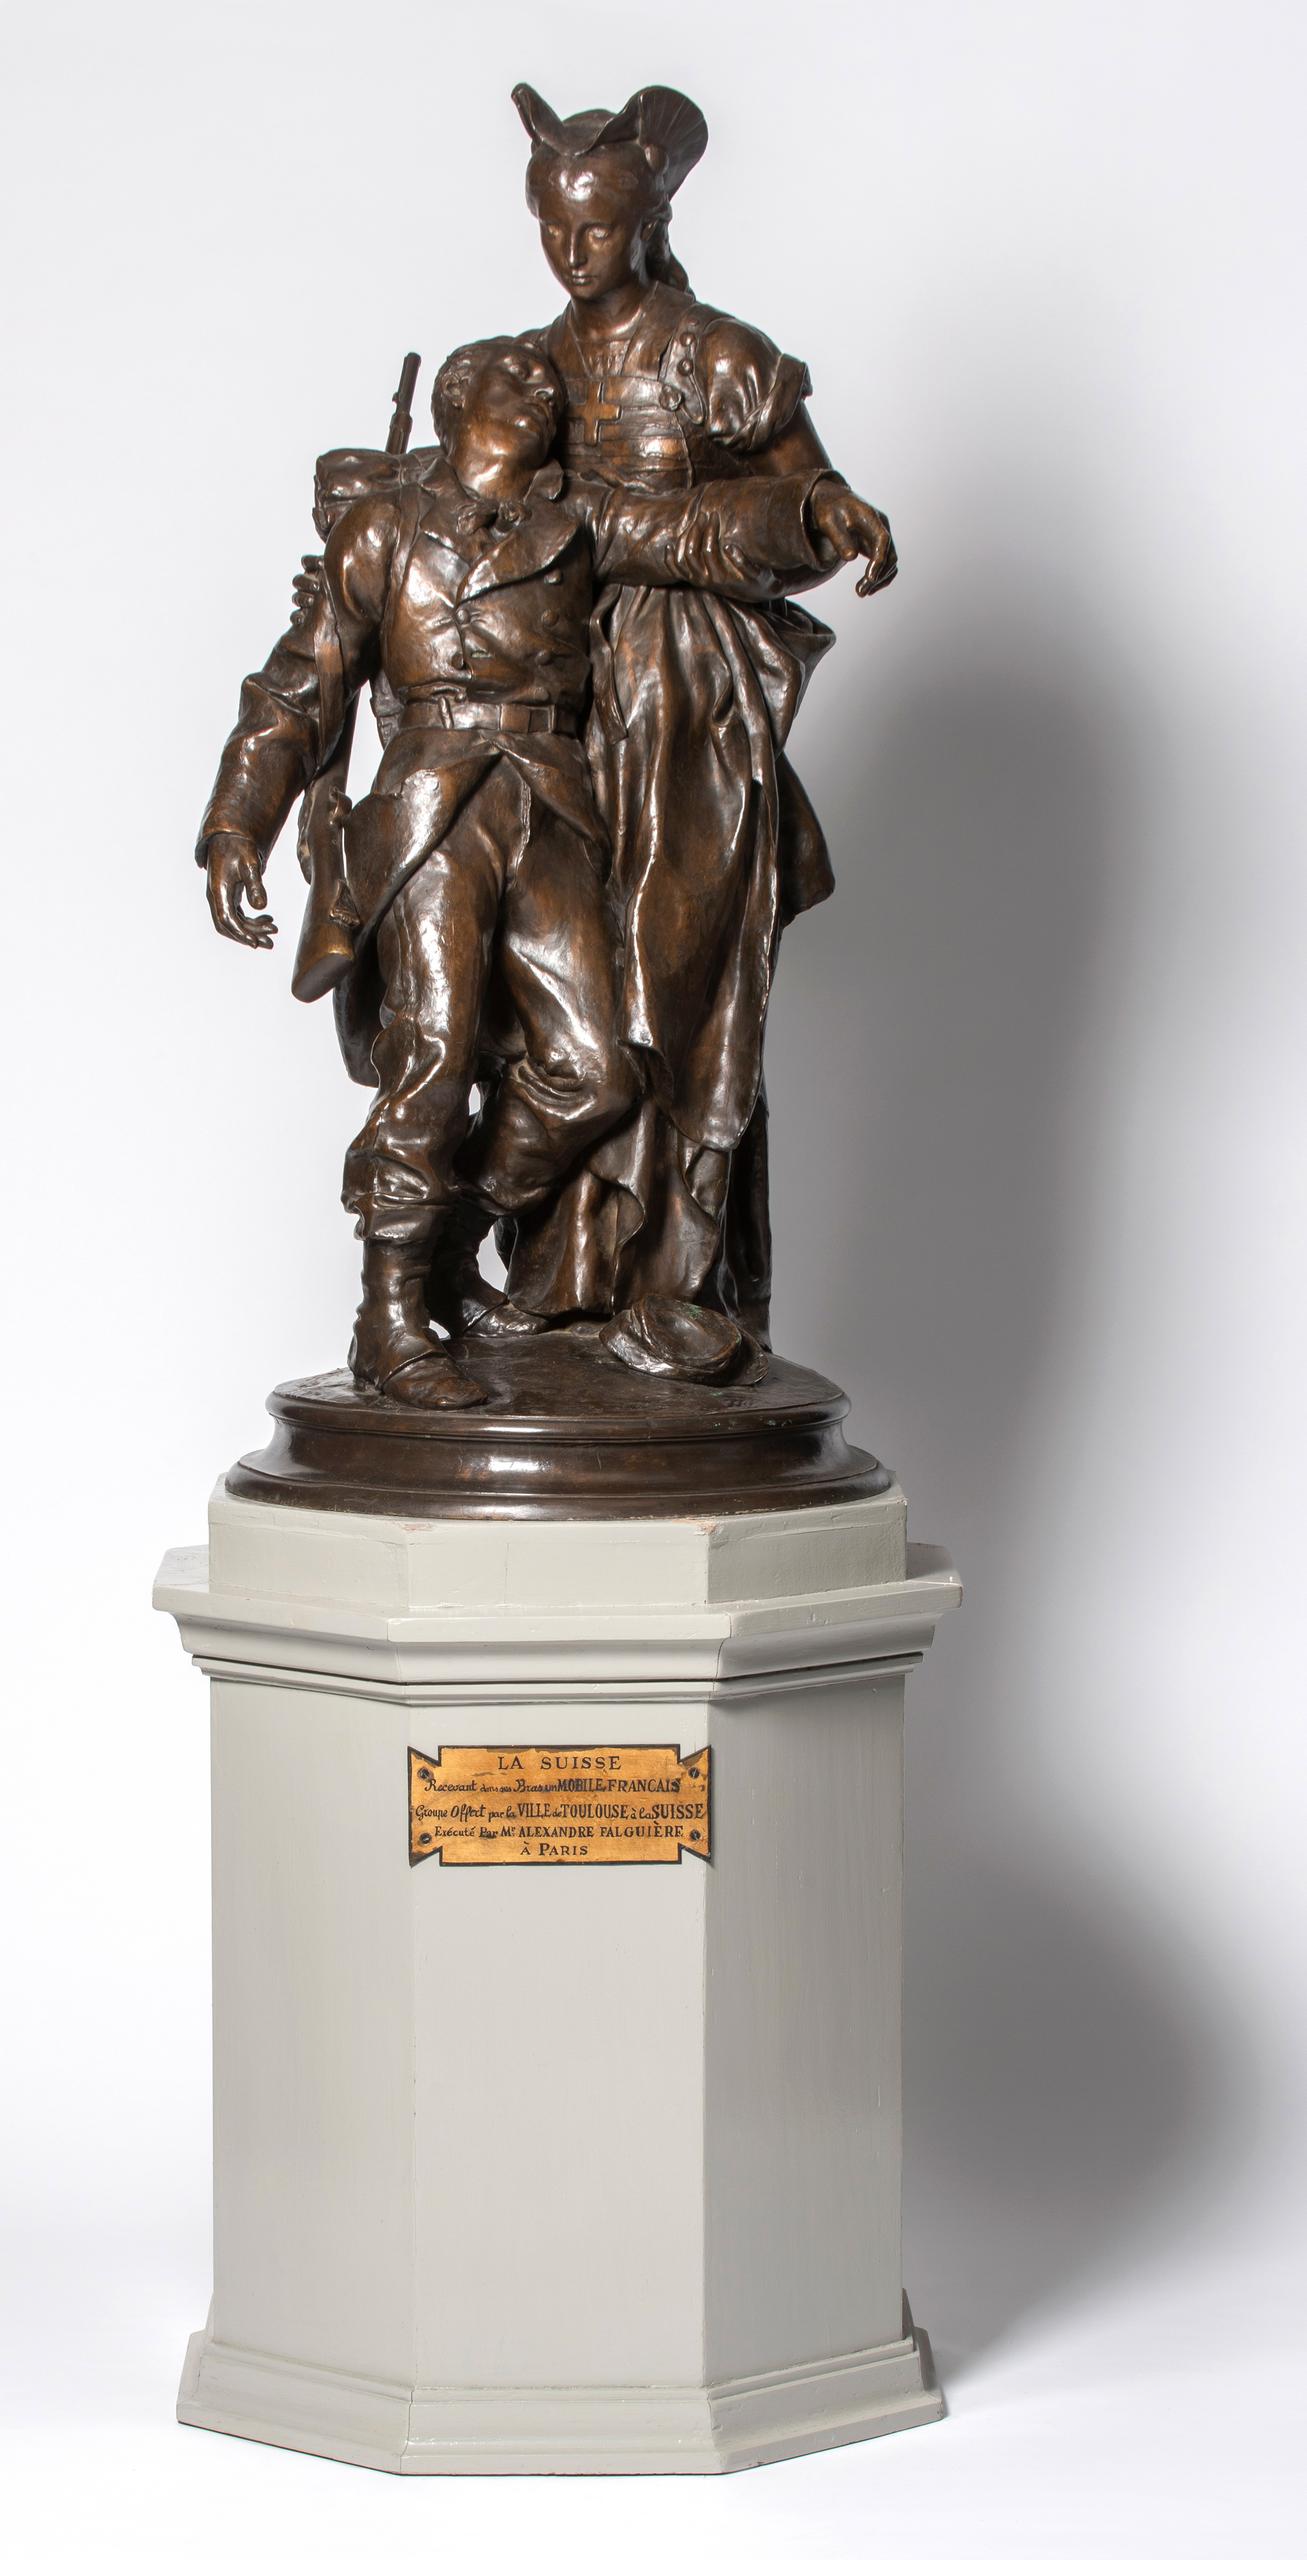 該系列中最古老的禮物，當屬由久負盛名的法國雕塑家及畫家亞歷山大·法爾吉耶爾（Alexandre Falguière）於1875年創作的一尊青銅雕塑。該國禮由法國圖盧茲市贈送給瑞士，以感謝瑞士在普法戰爭期間為8.7萬名法國士兵提供避難容身之所的義舉。